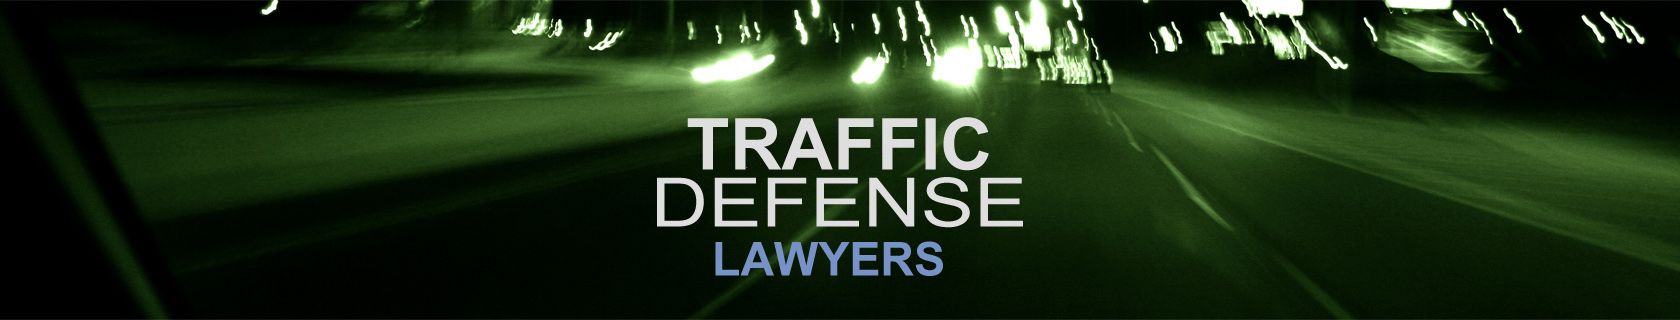 chicago traffic violation defense attorney